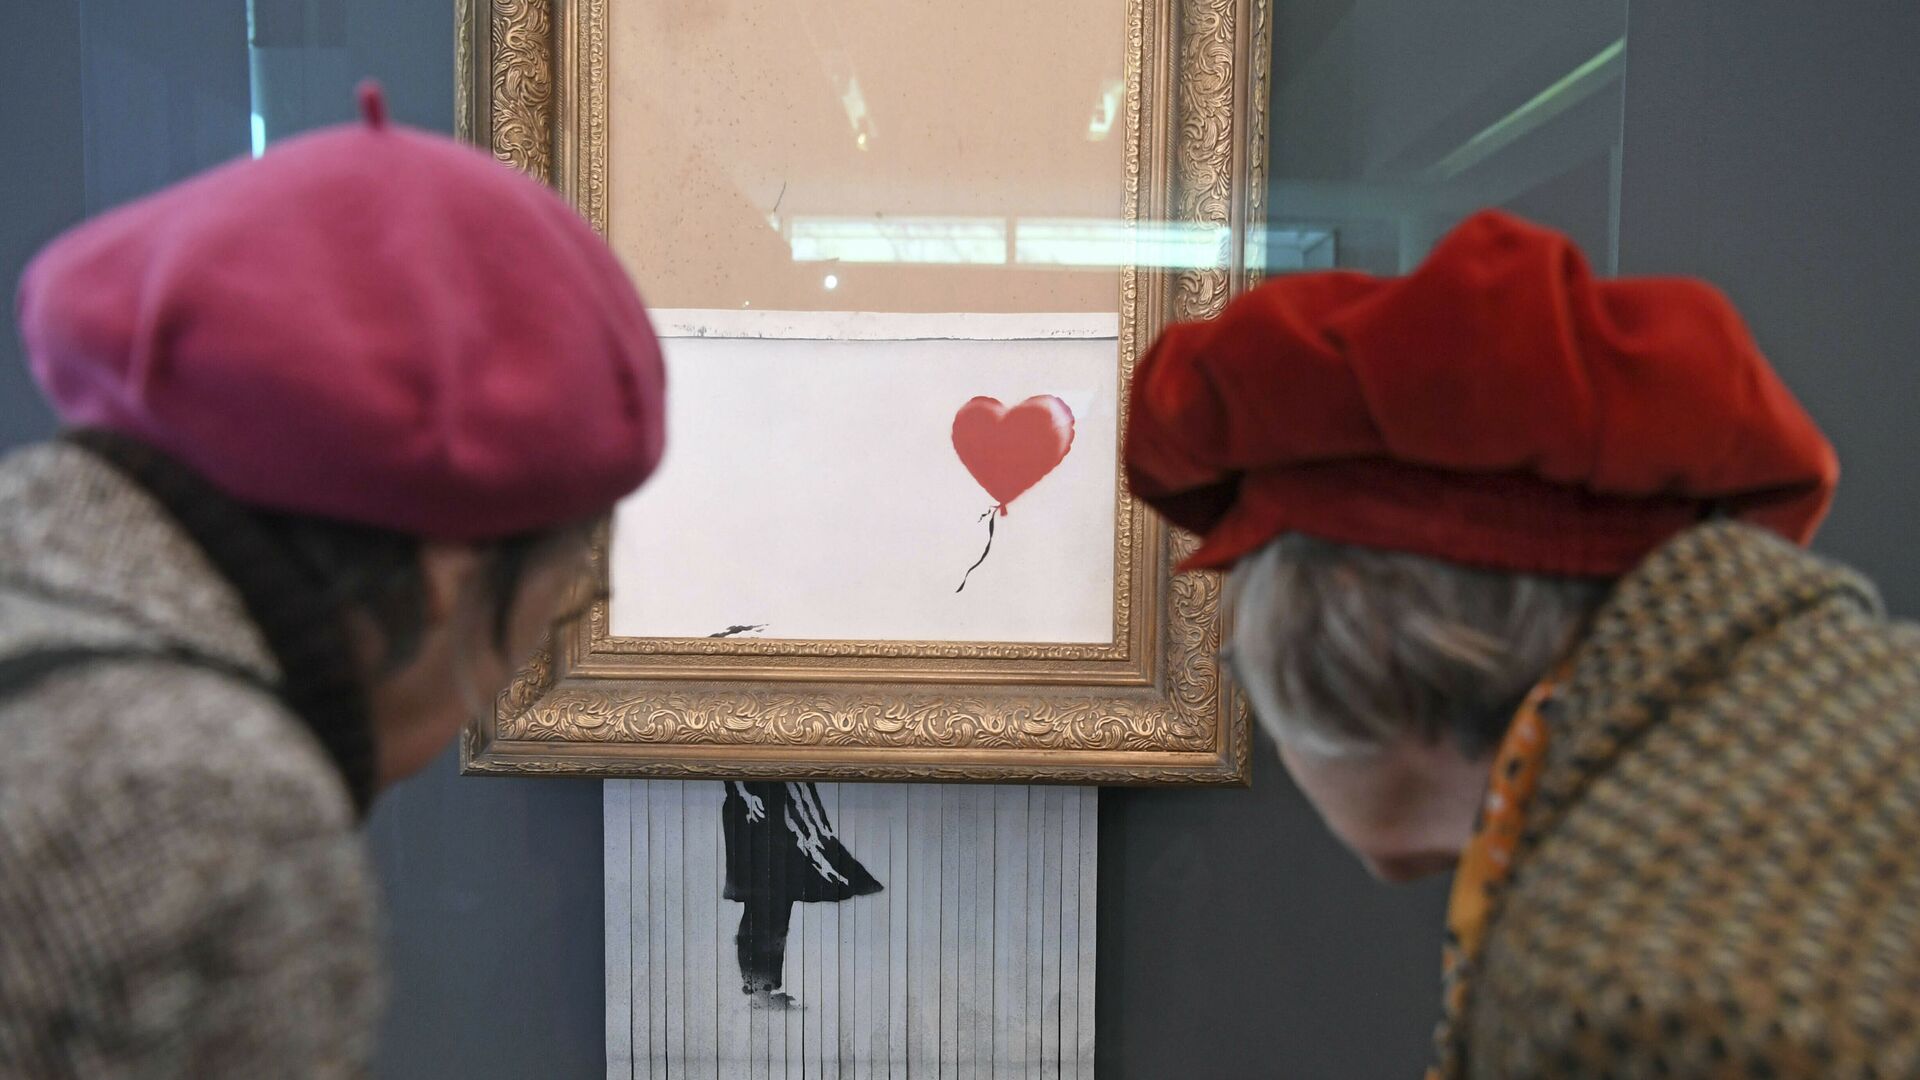 Посетители смотрят на самоуничтожившуюся после продажи на аукционе картину художника Бэнкси Девочка с воздушным шаром, которая теперь называется Любовь в мусорном баке, в Музее современного искусства в Баден-Бадене, Германия - Sputnik 日本, 1920, 15.10.2021